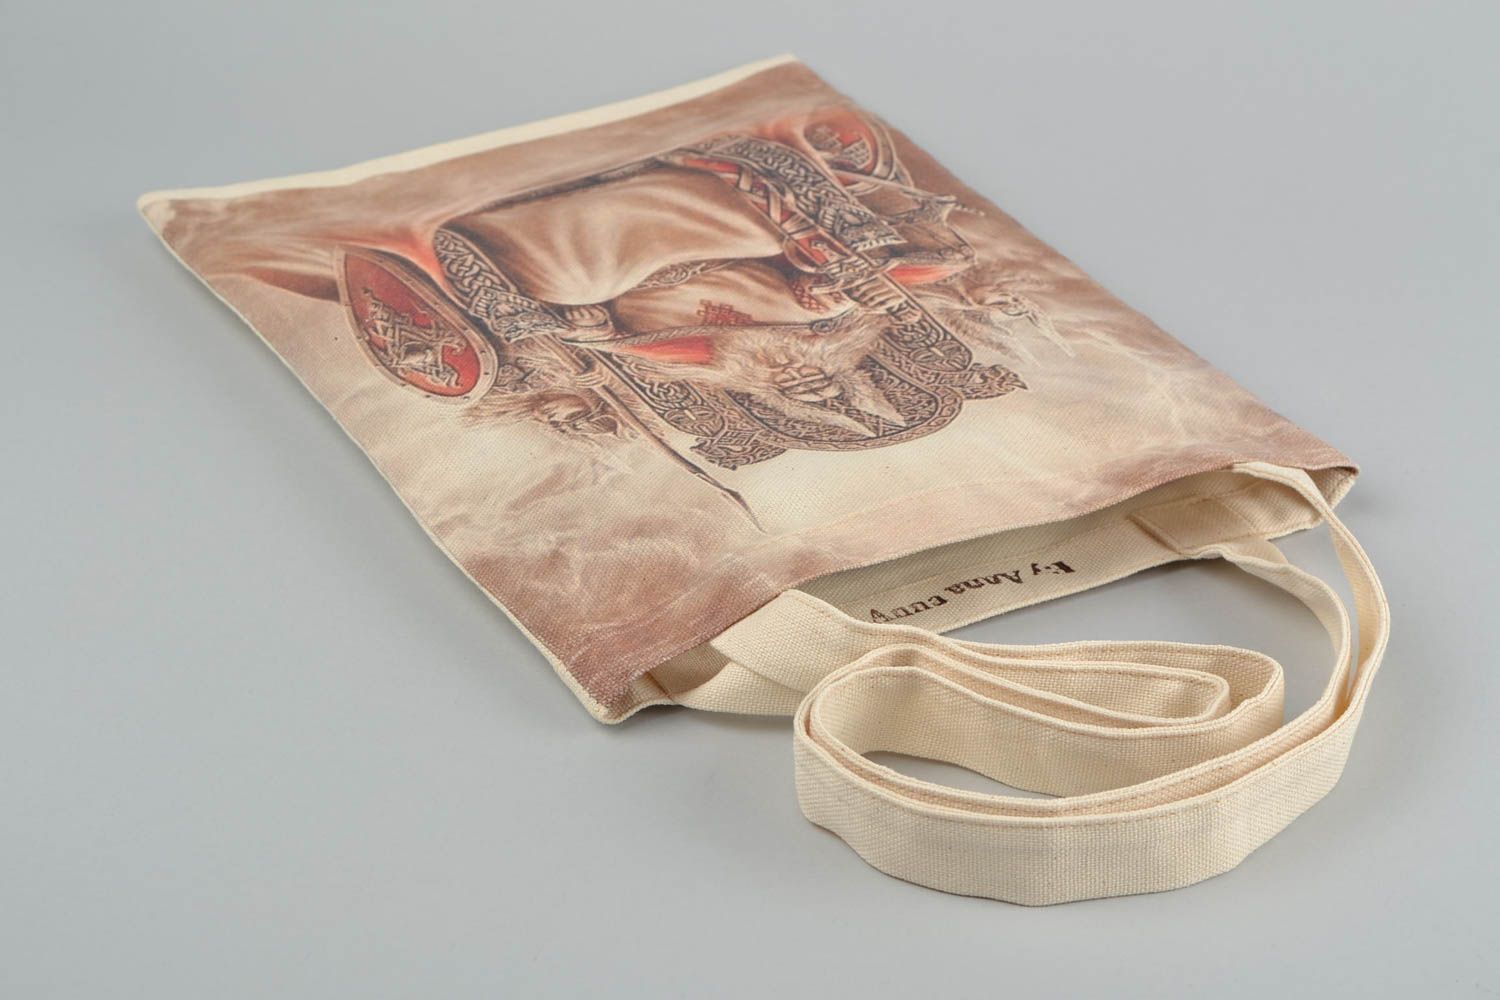 Öko Handtasche aus Stoff mit Print groß originell handgemacht Designer  foto 4